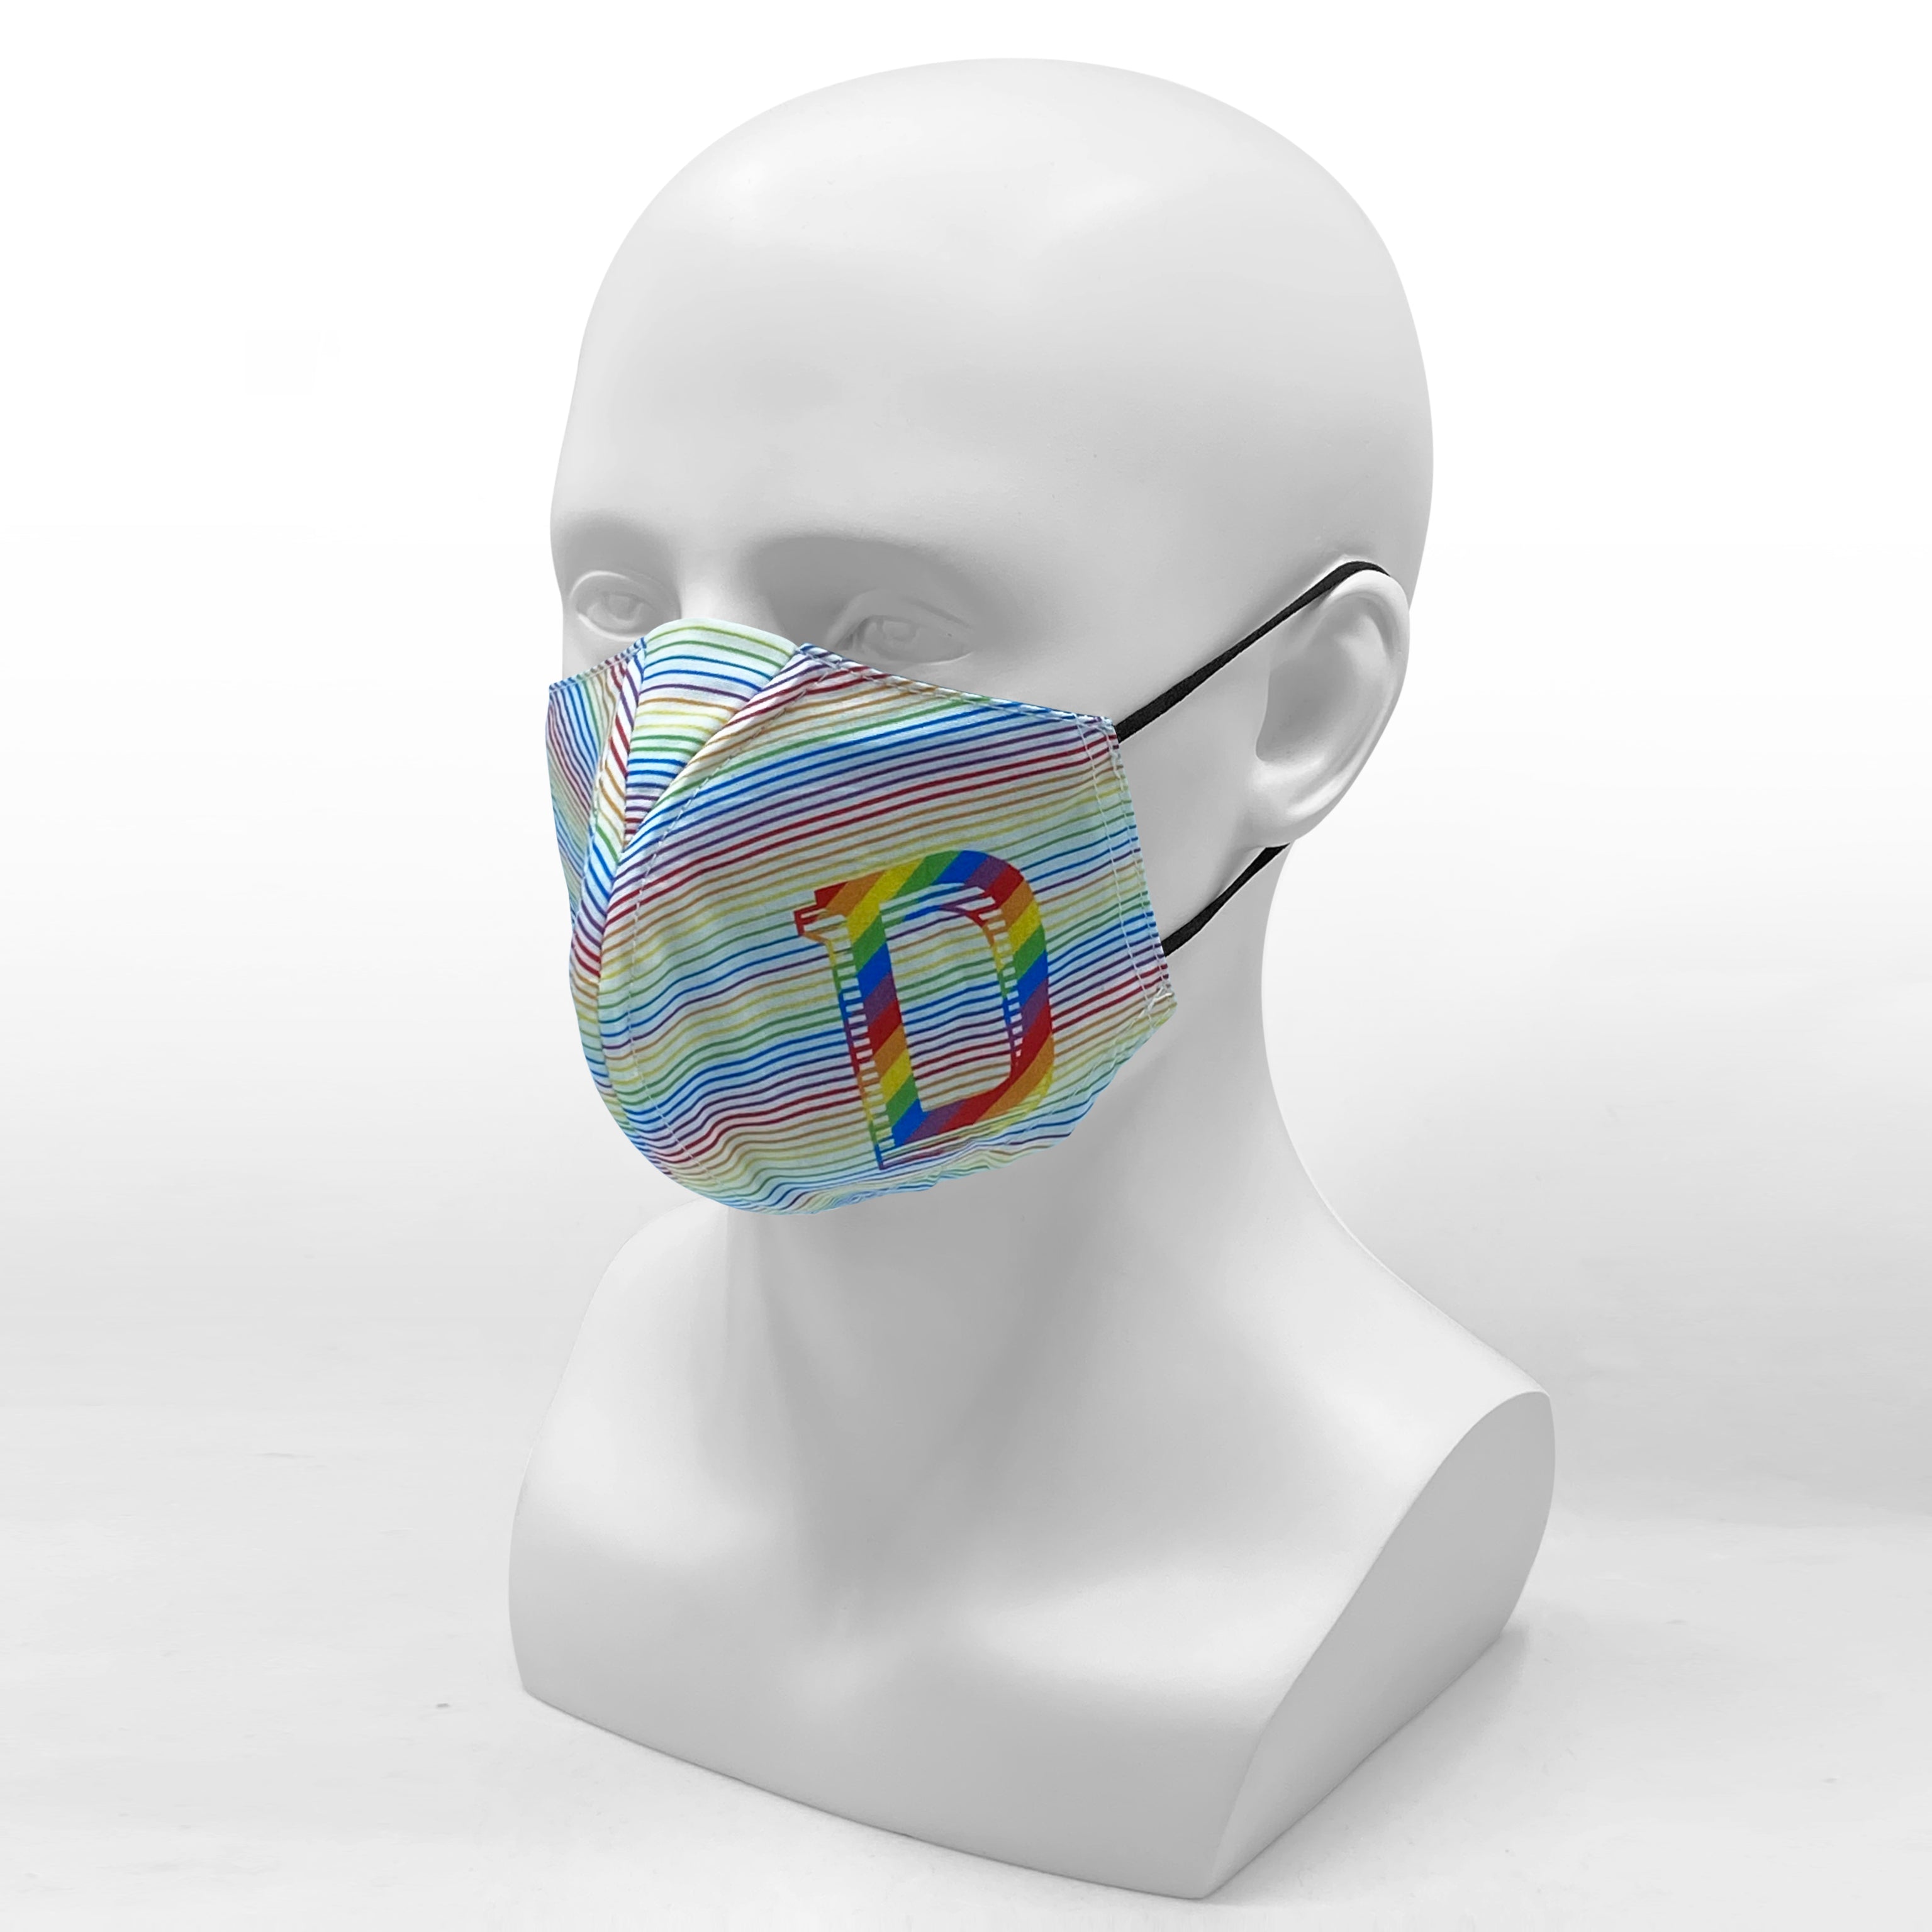 Design Trust Why-Y Fabric Mask, Rainbow